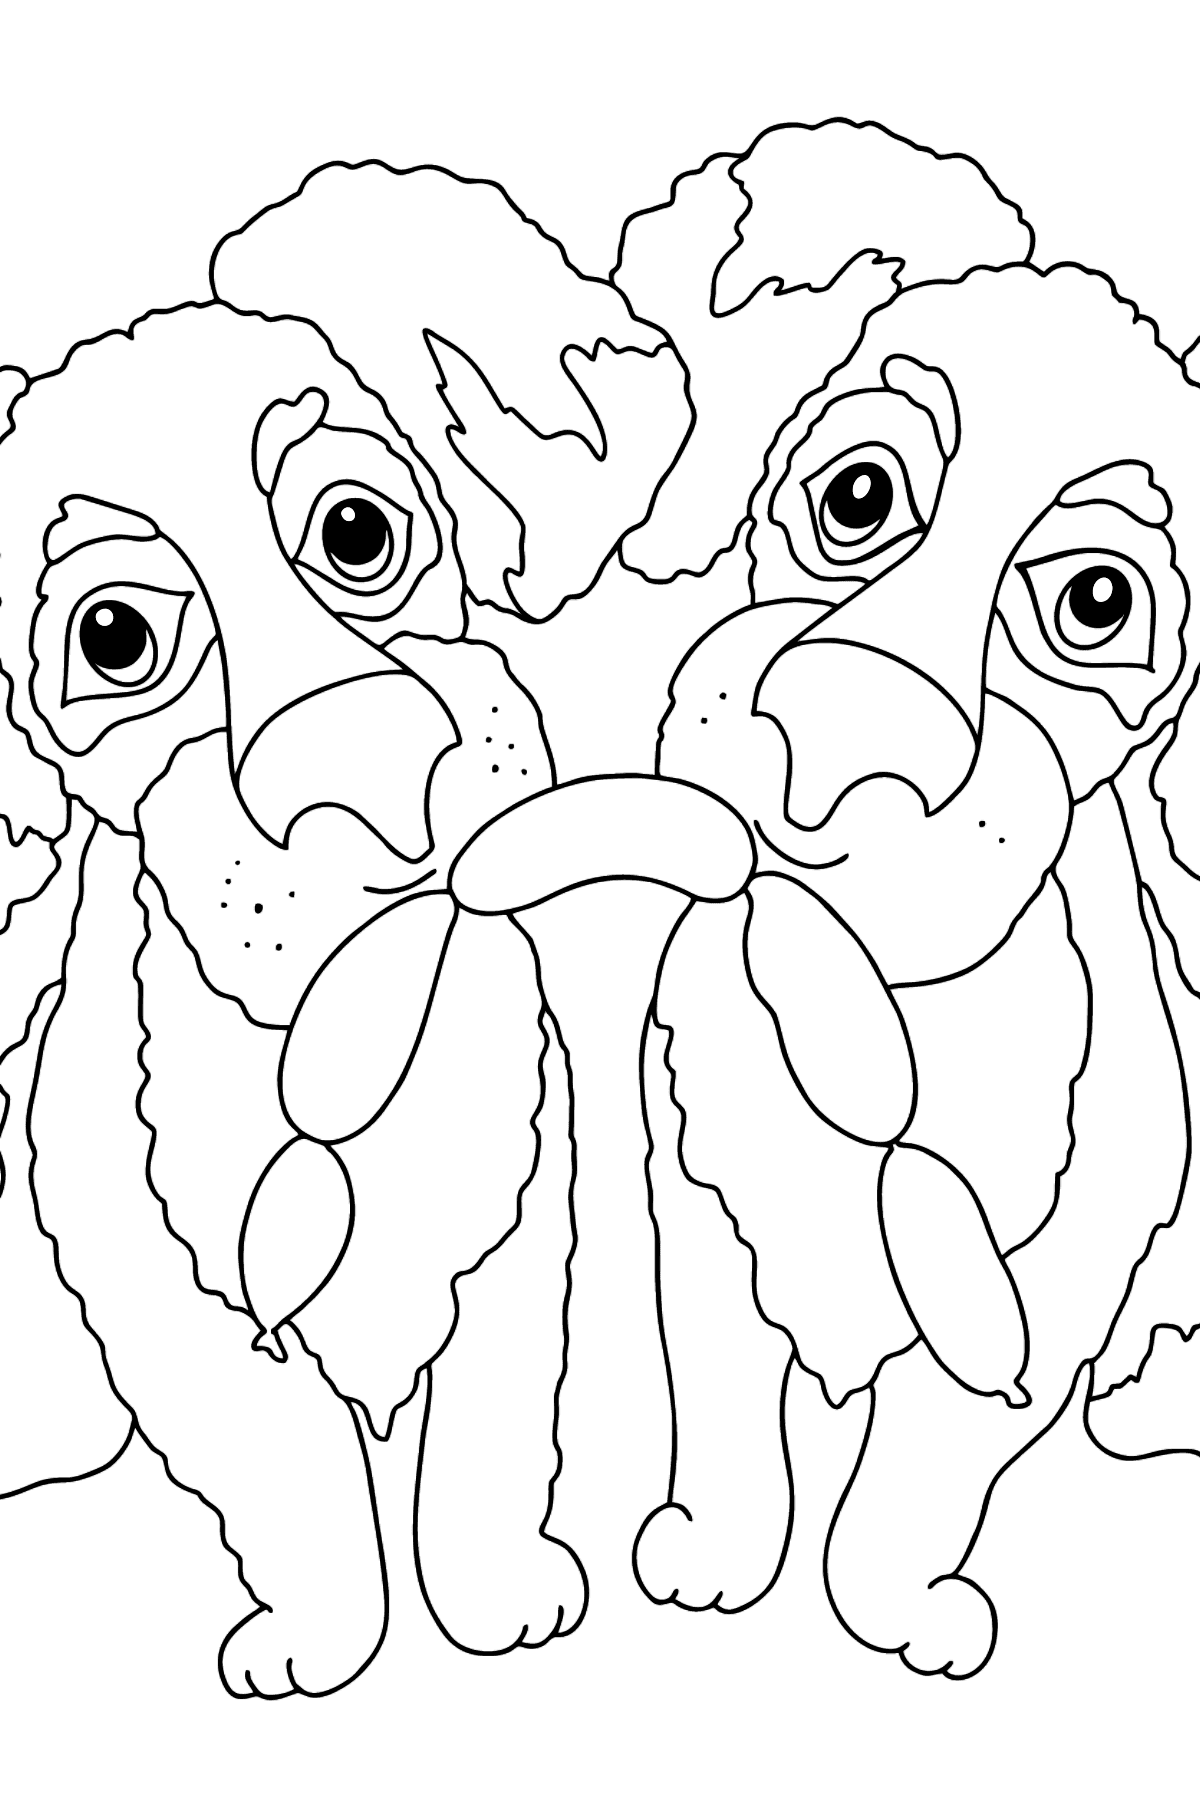 Легкая раскраска Собаки - Картинки для Детей